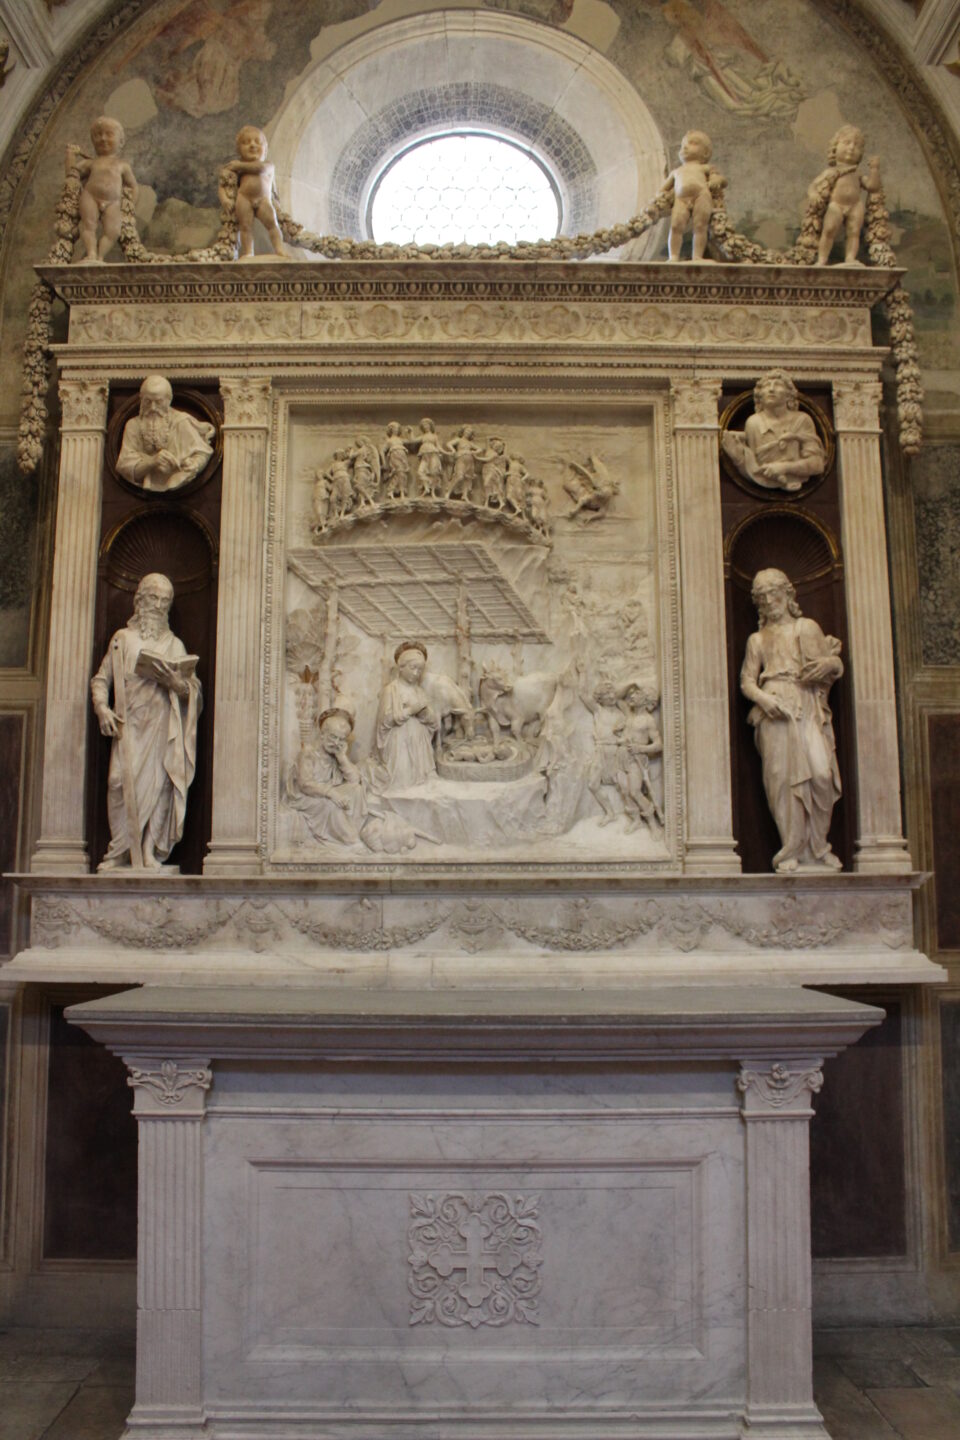 Nella Cappella Piccolomini è conservata l'opera scultorea con "Adorazione dei Pastori" di Antonio Rossellino.